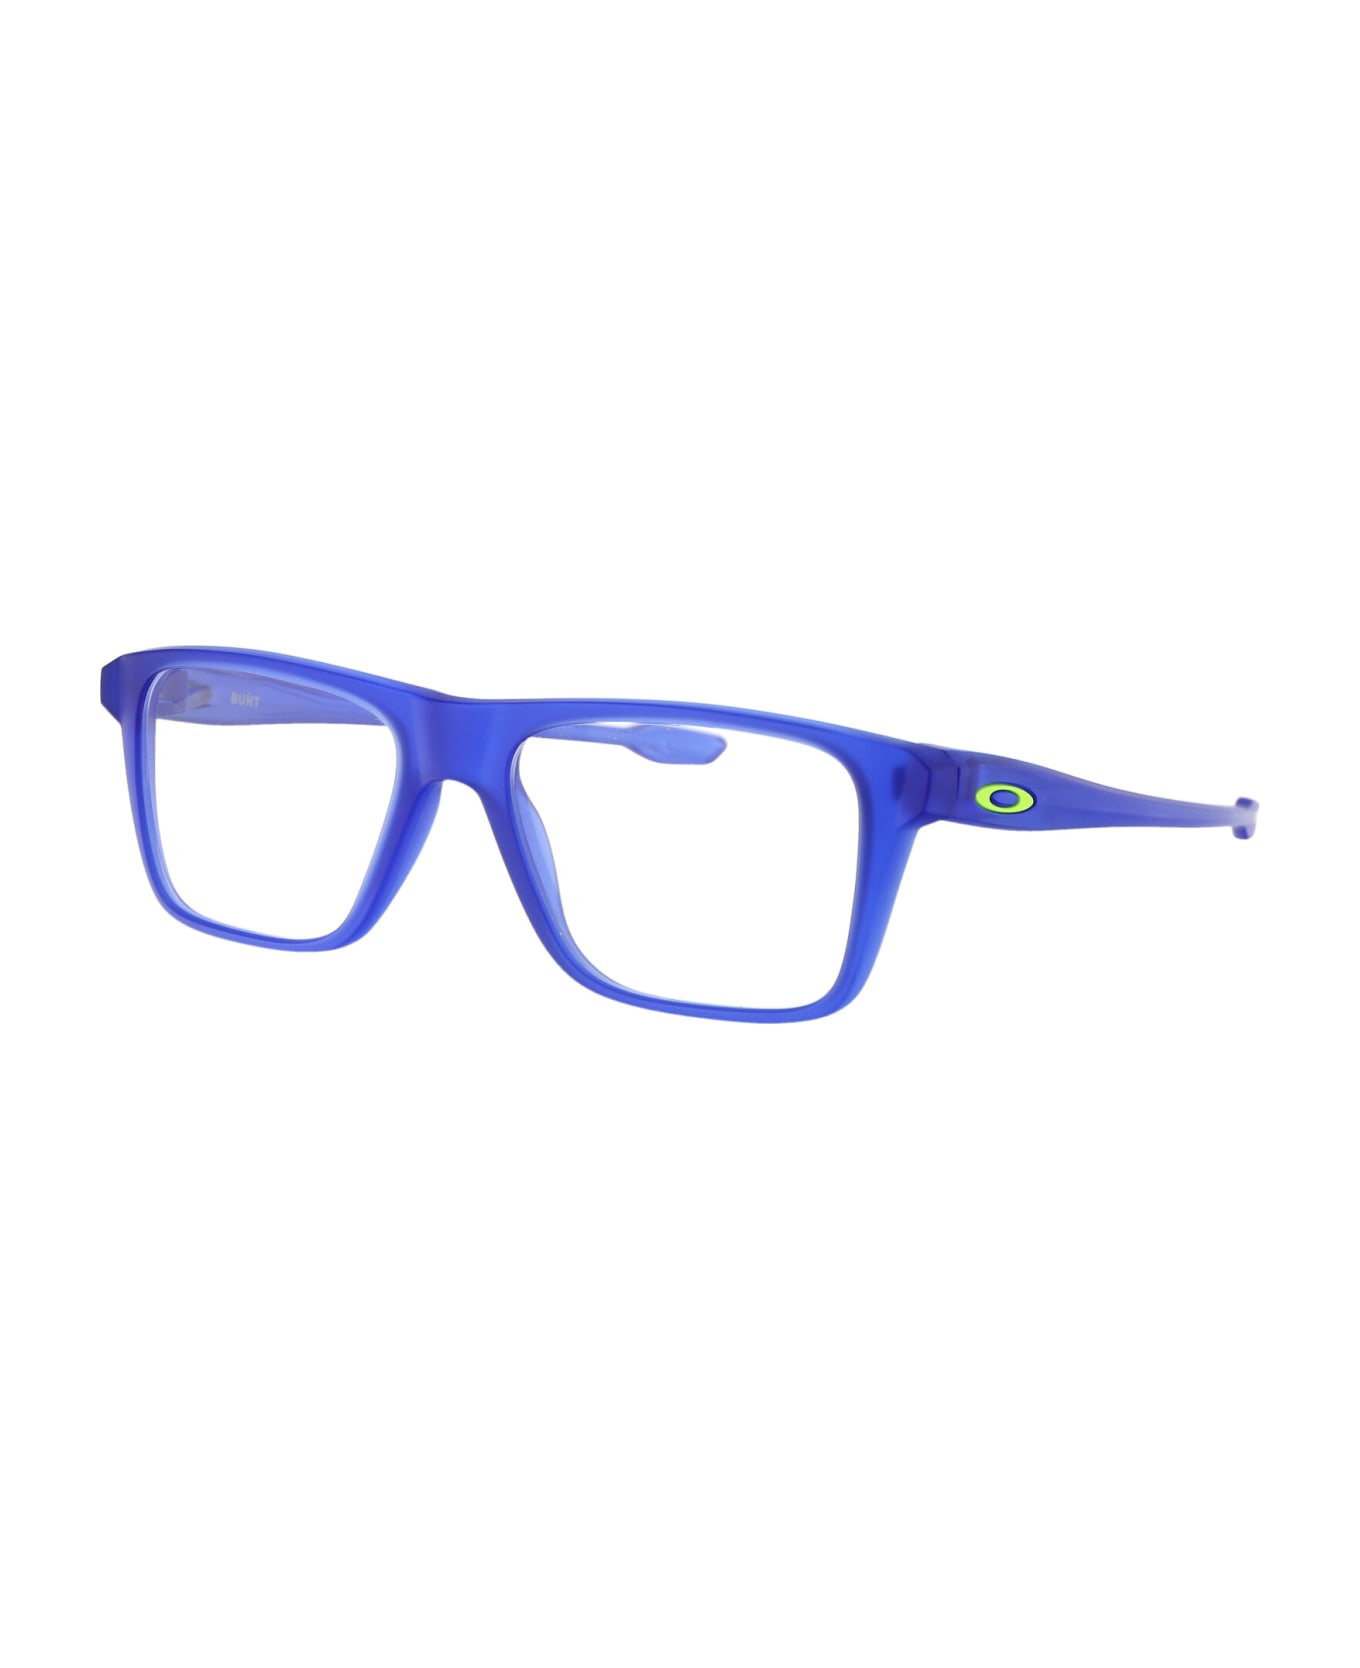 Oakley Bunt Glasses - 802604 MATTE SEA GLASS DEMO LENS